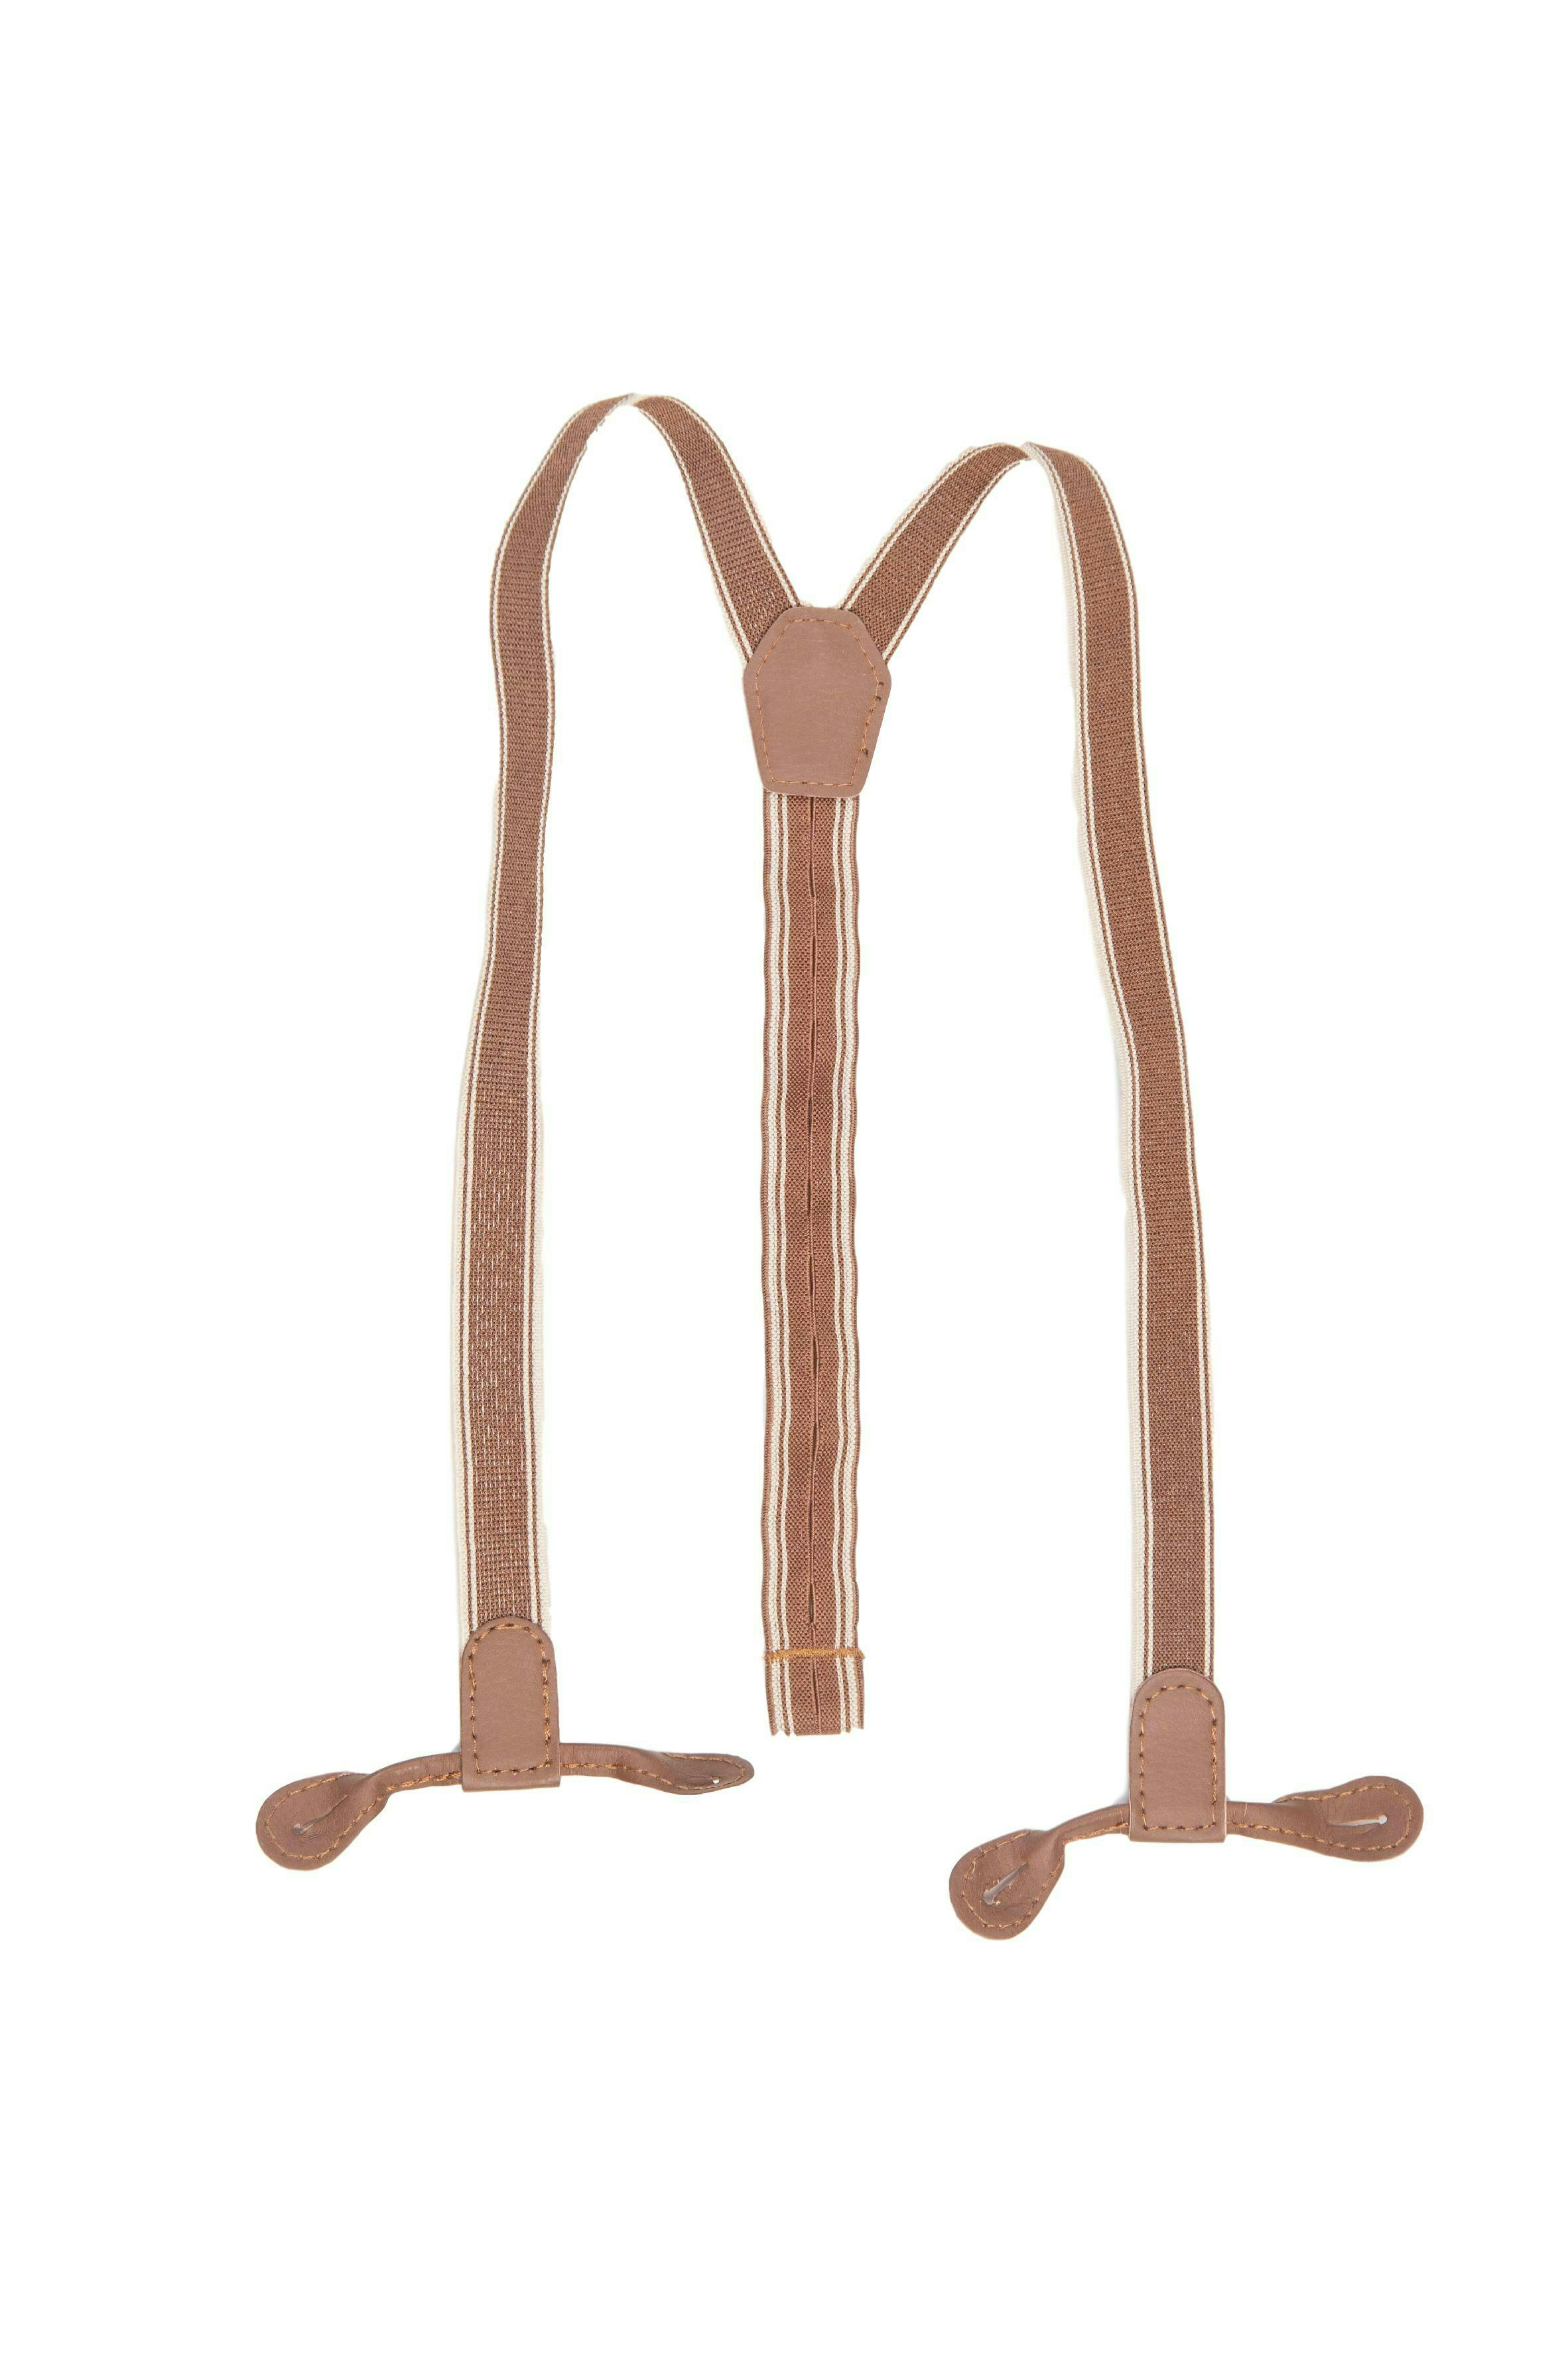 Pantalón de corduroydelgado marron con tirantes, cintura regulable - Zara